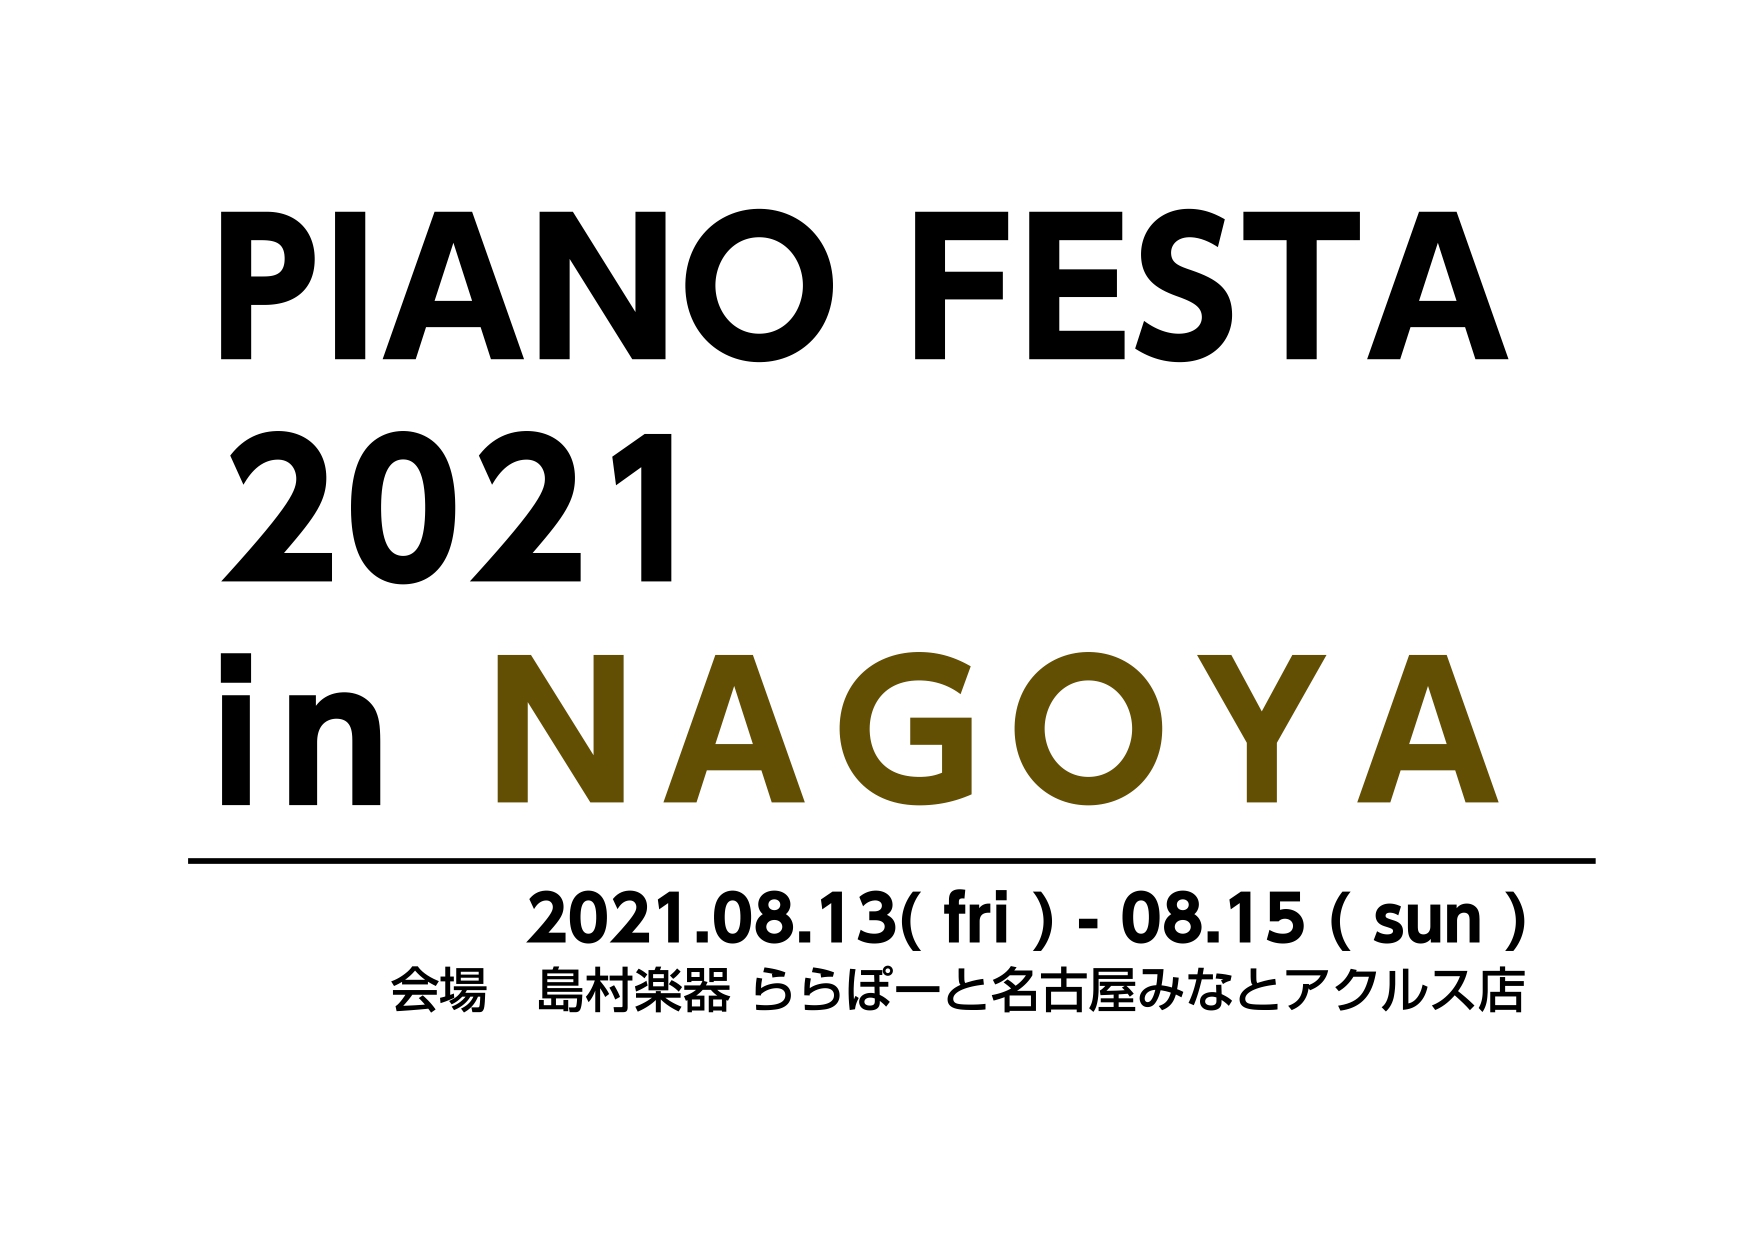 8/13-15　ピアノフェスタ開催！～PIANO FESTA 2021 in NAGOYA～